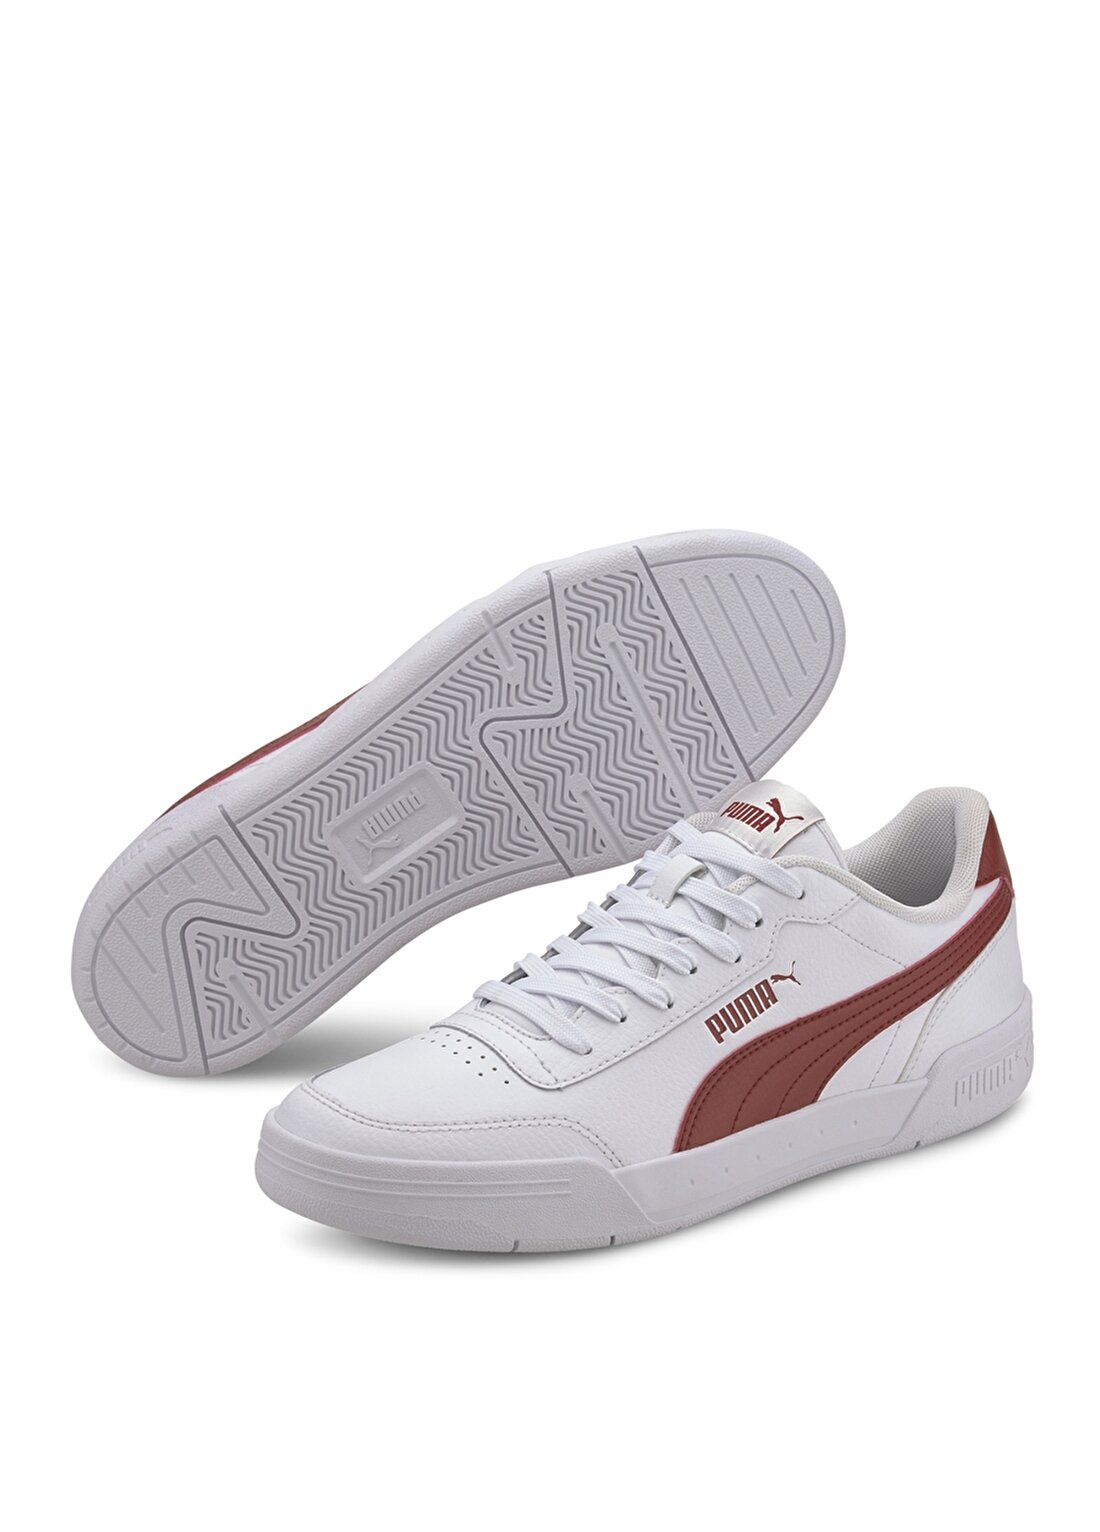 Puma Caracal Beyaz - Kırmızı Erkek Lifestyle Ayakkabı